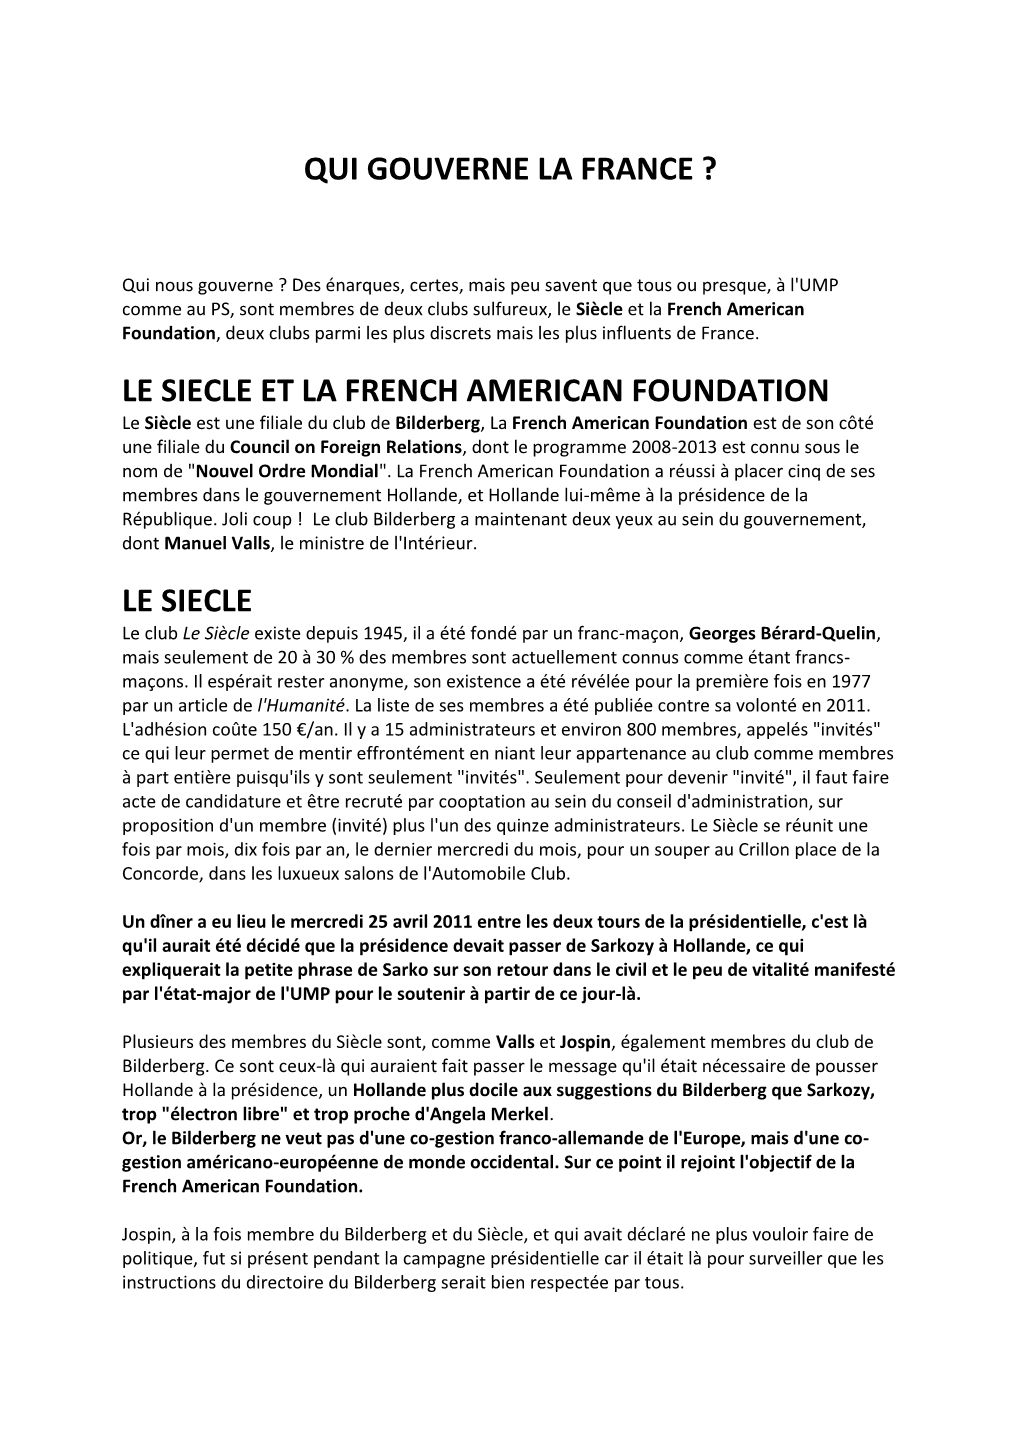 Qui Gouverne La France ? Le Siecle Et La French